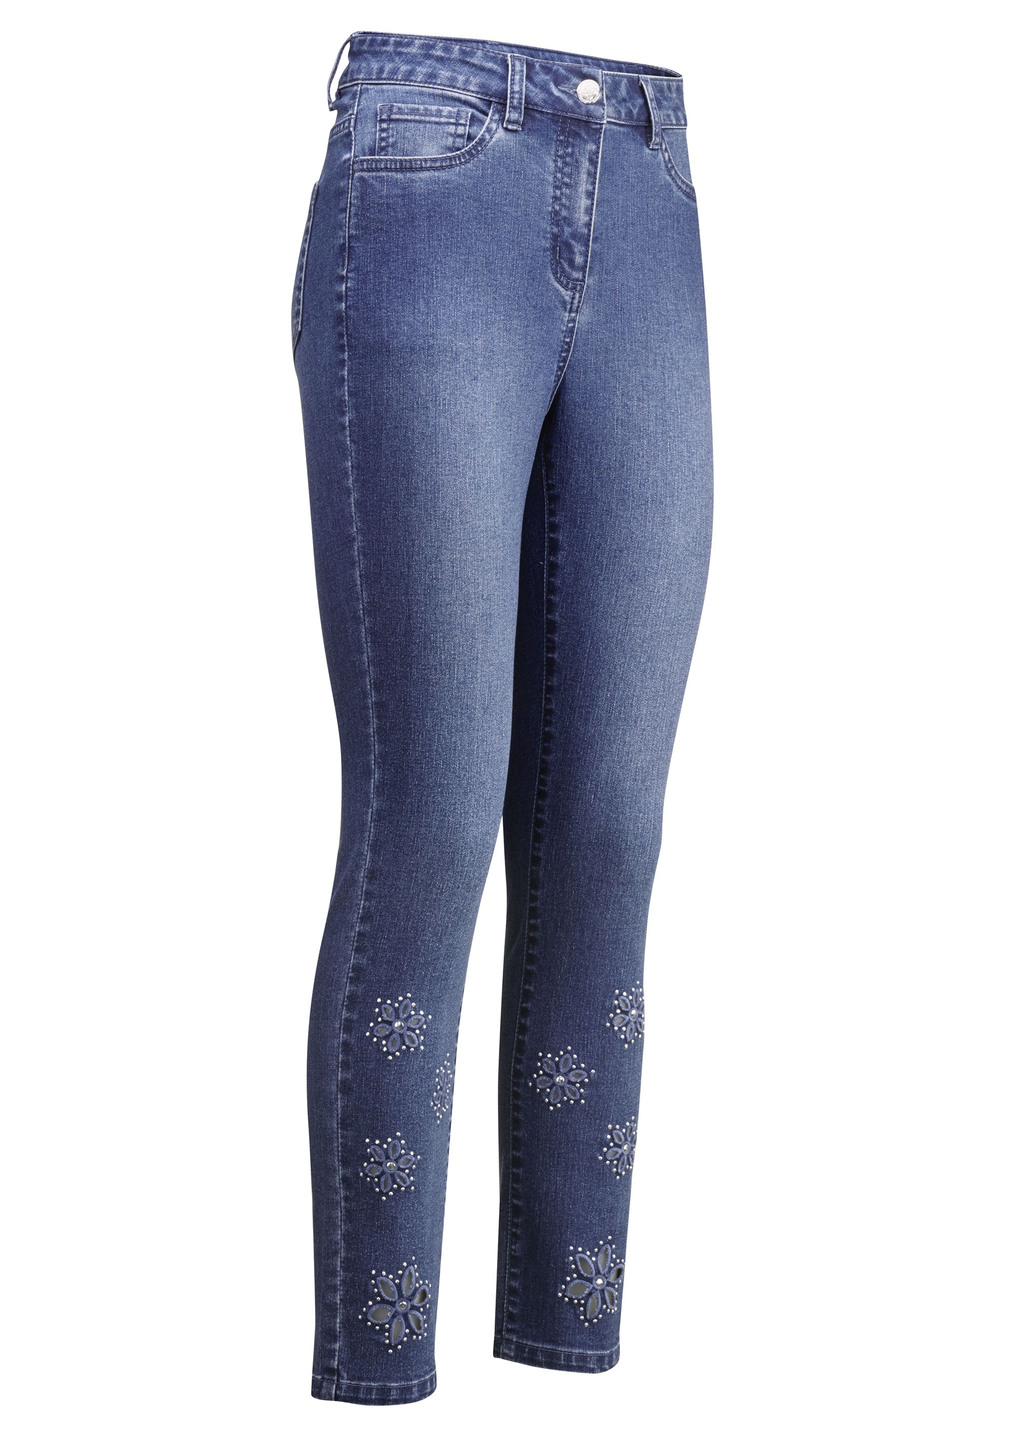 Jeans mit floralen Lochstickereien und Strasssteinchen, Jeansblau, Größe 50 von BADER